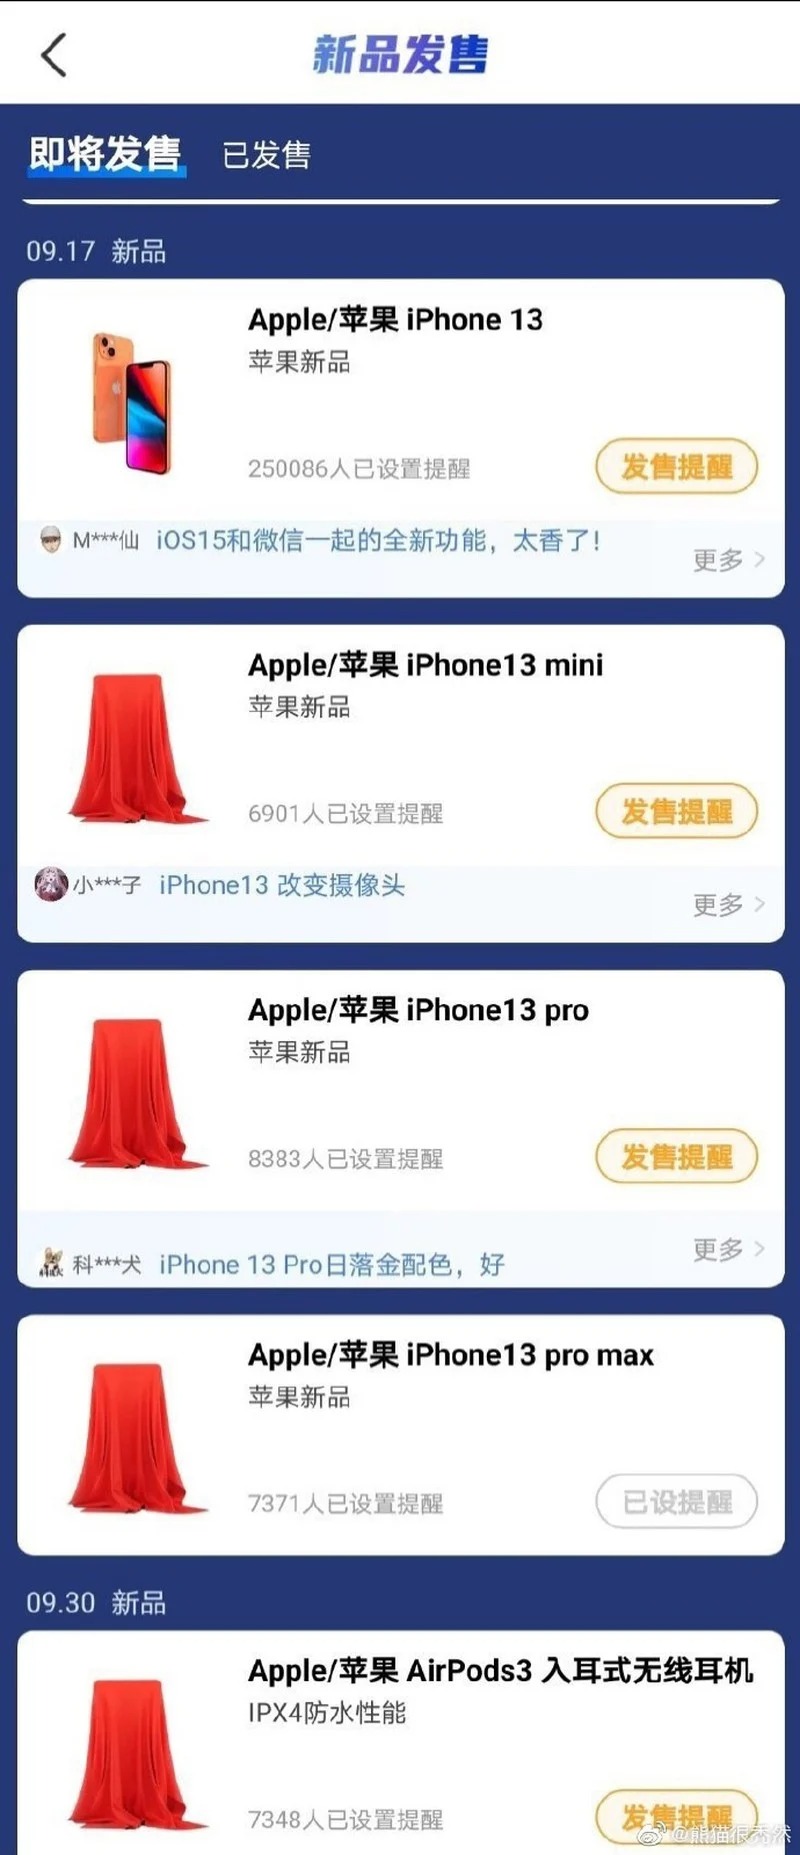 Báo cáo cho biết iPhone 13 sẽ ra mắt vào 17/9 và AirPods 3 vào 30/9